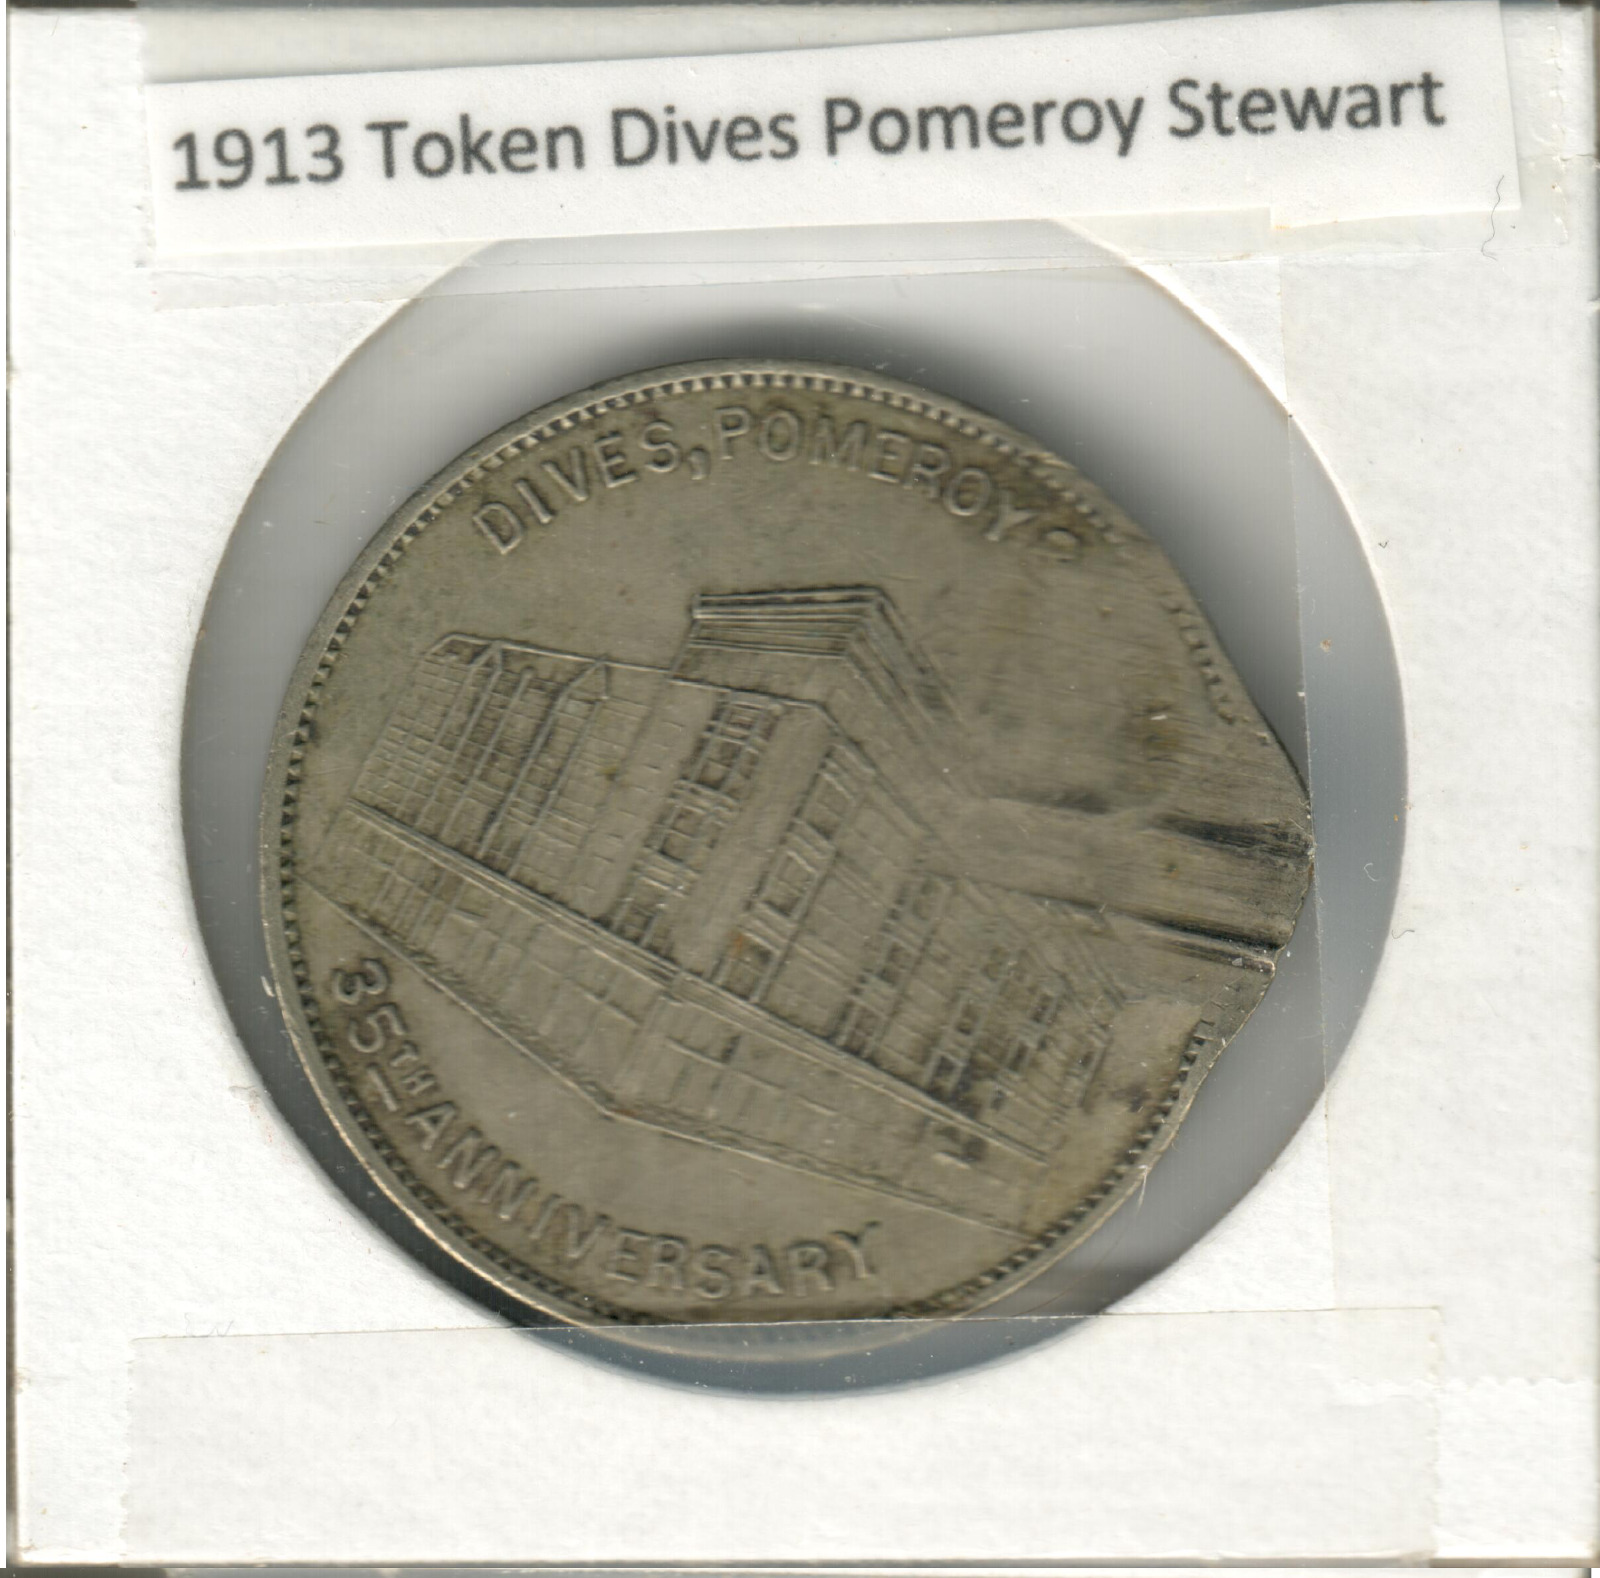 Token - 1913 Dives Pomeroy Stewart Harrisburg PA Good Luck Coin